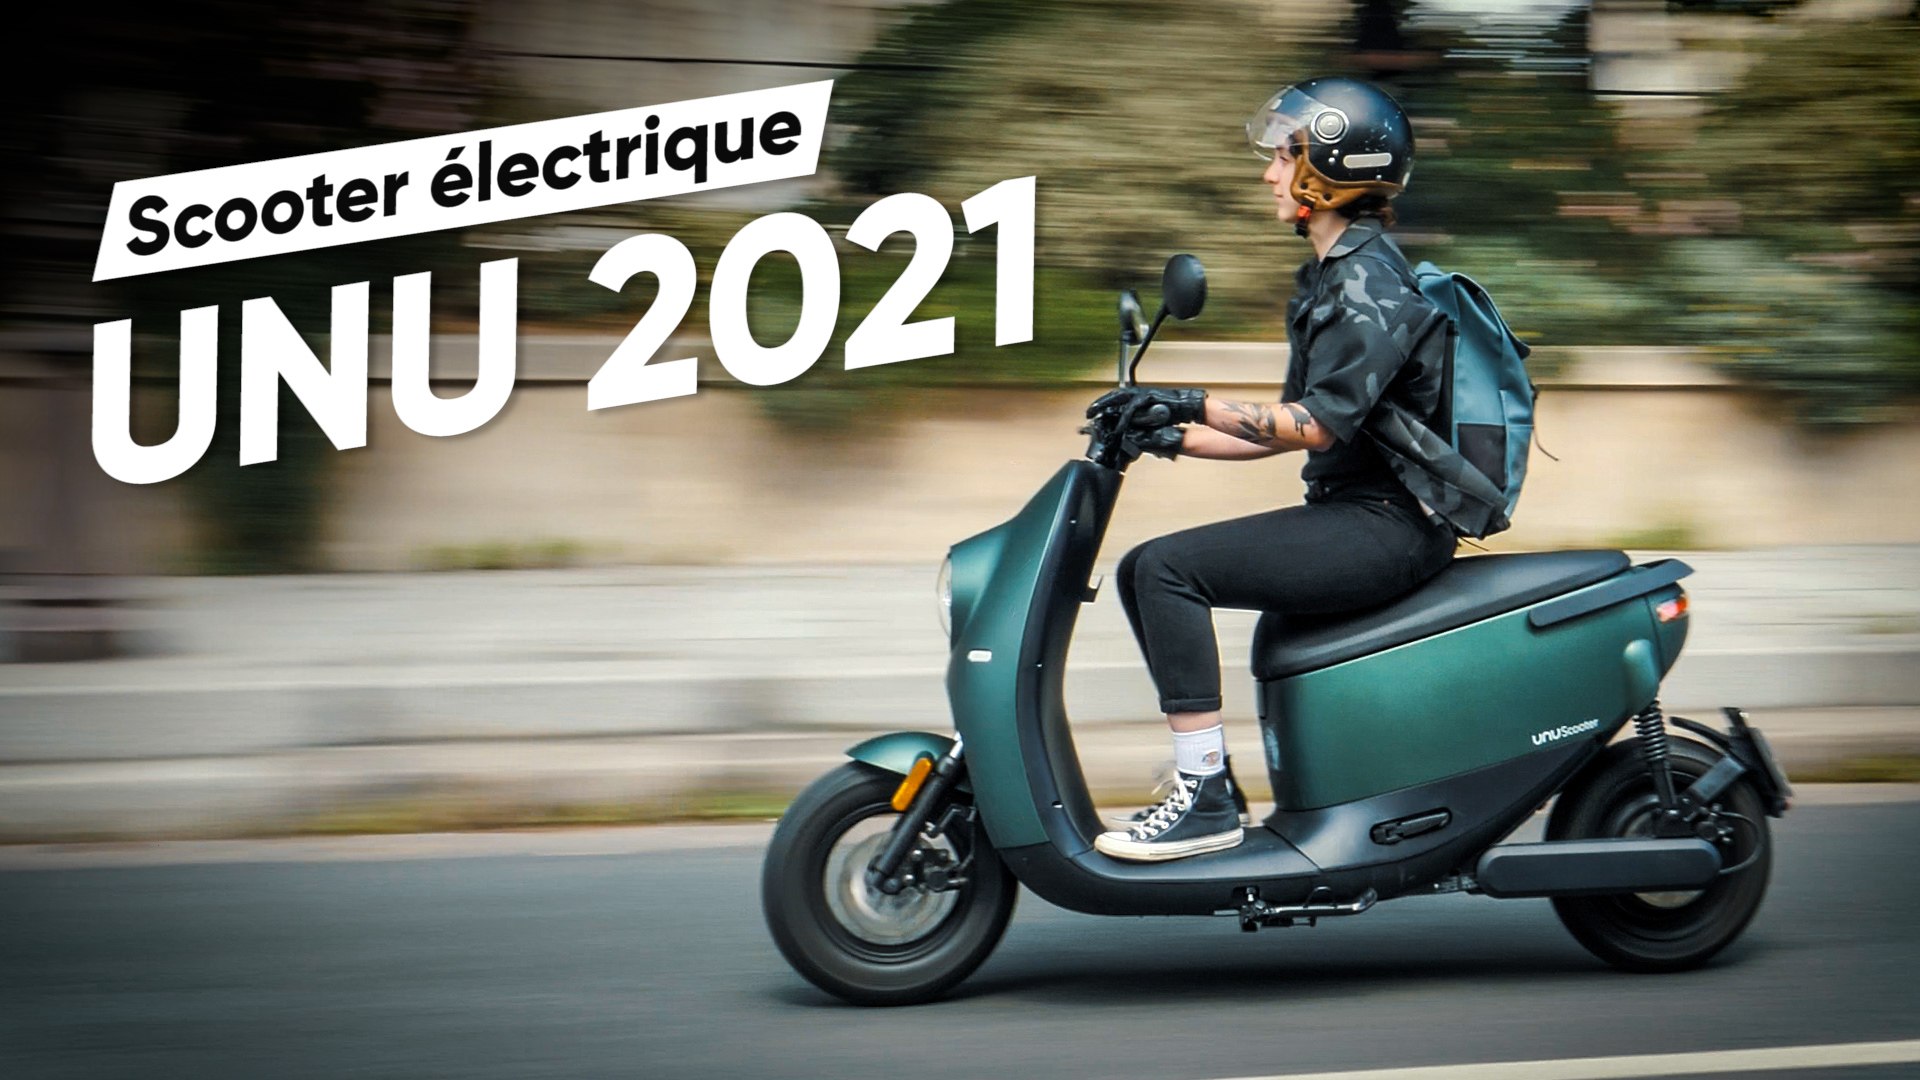 Test du Unu 2021 : le plus beau des scooters électriques - Vidéo Dailymotion